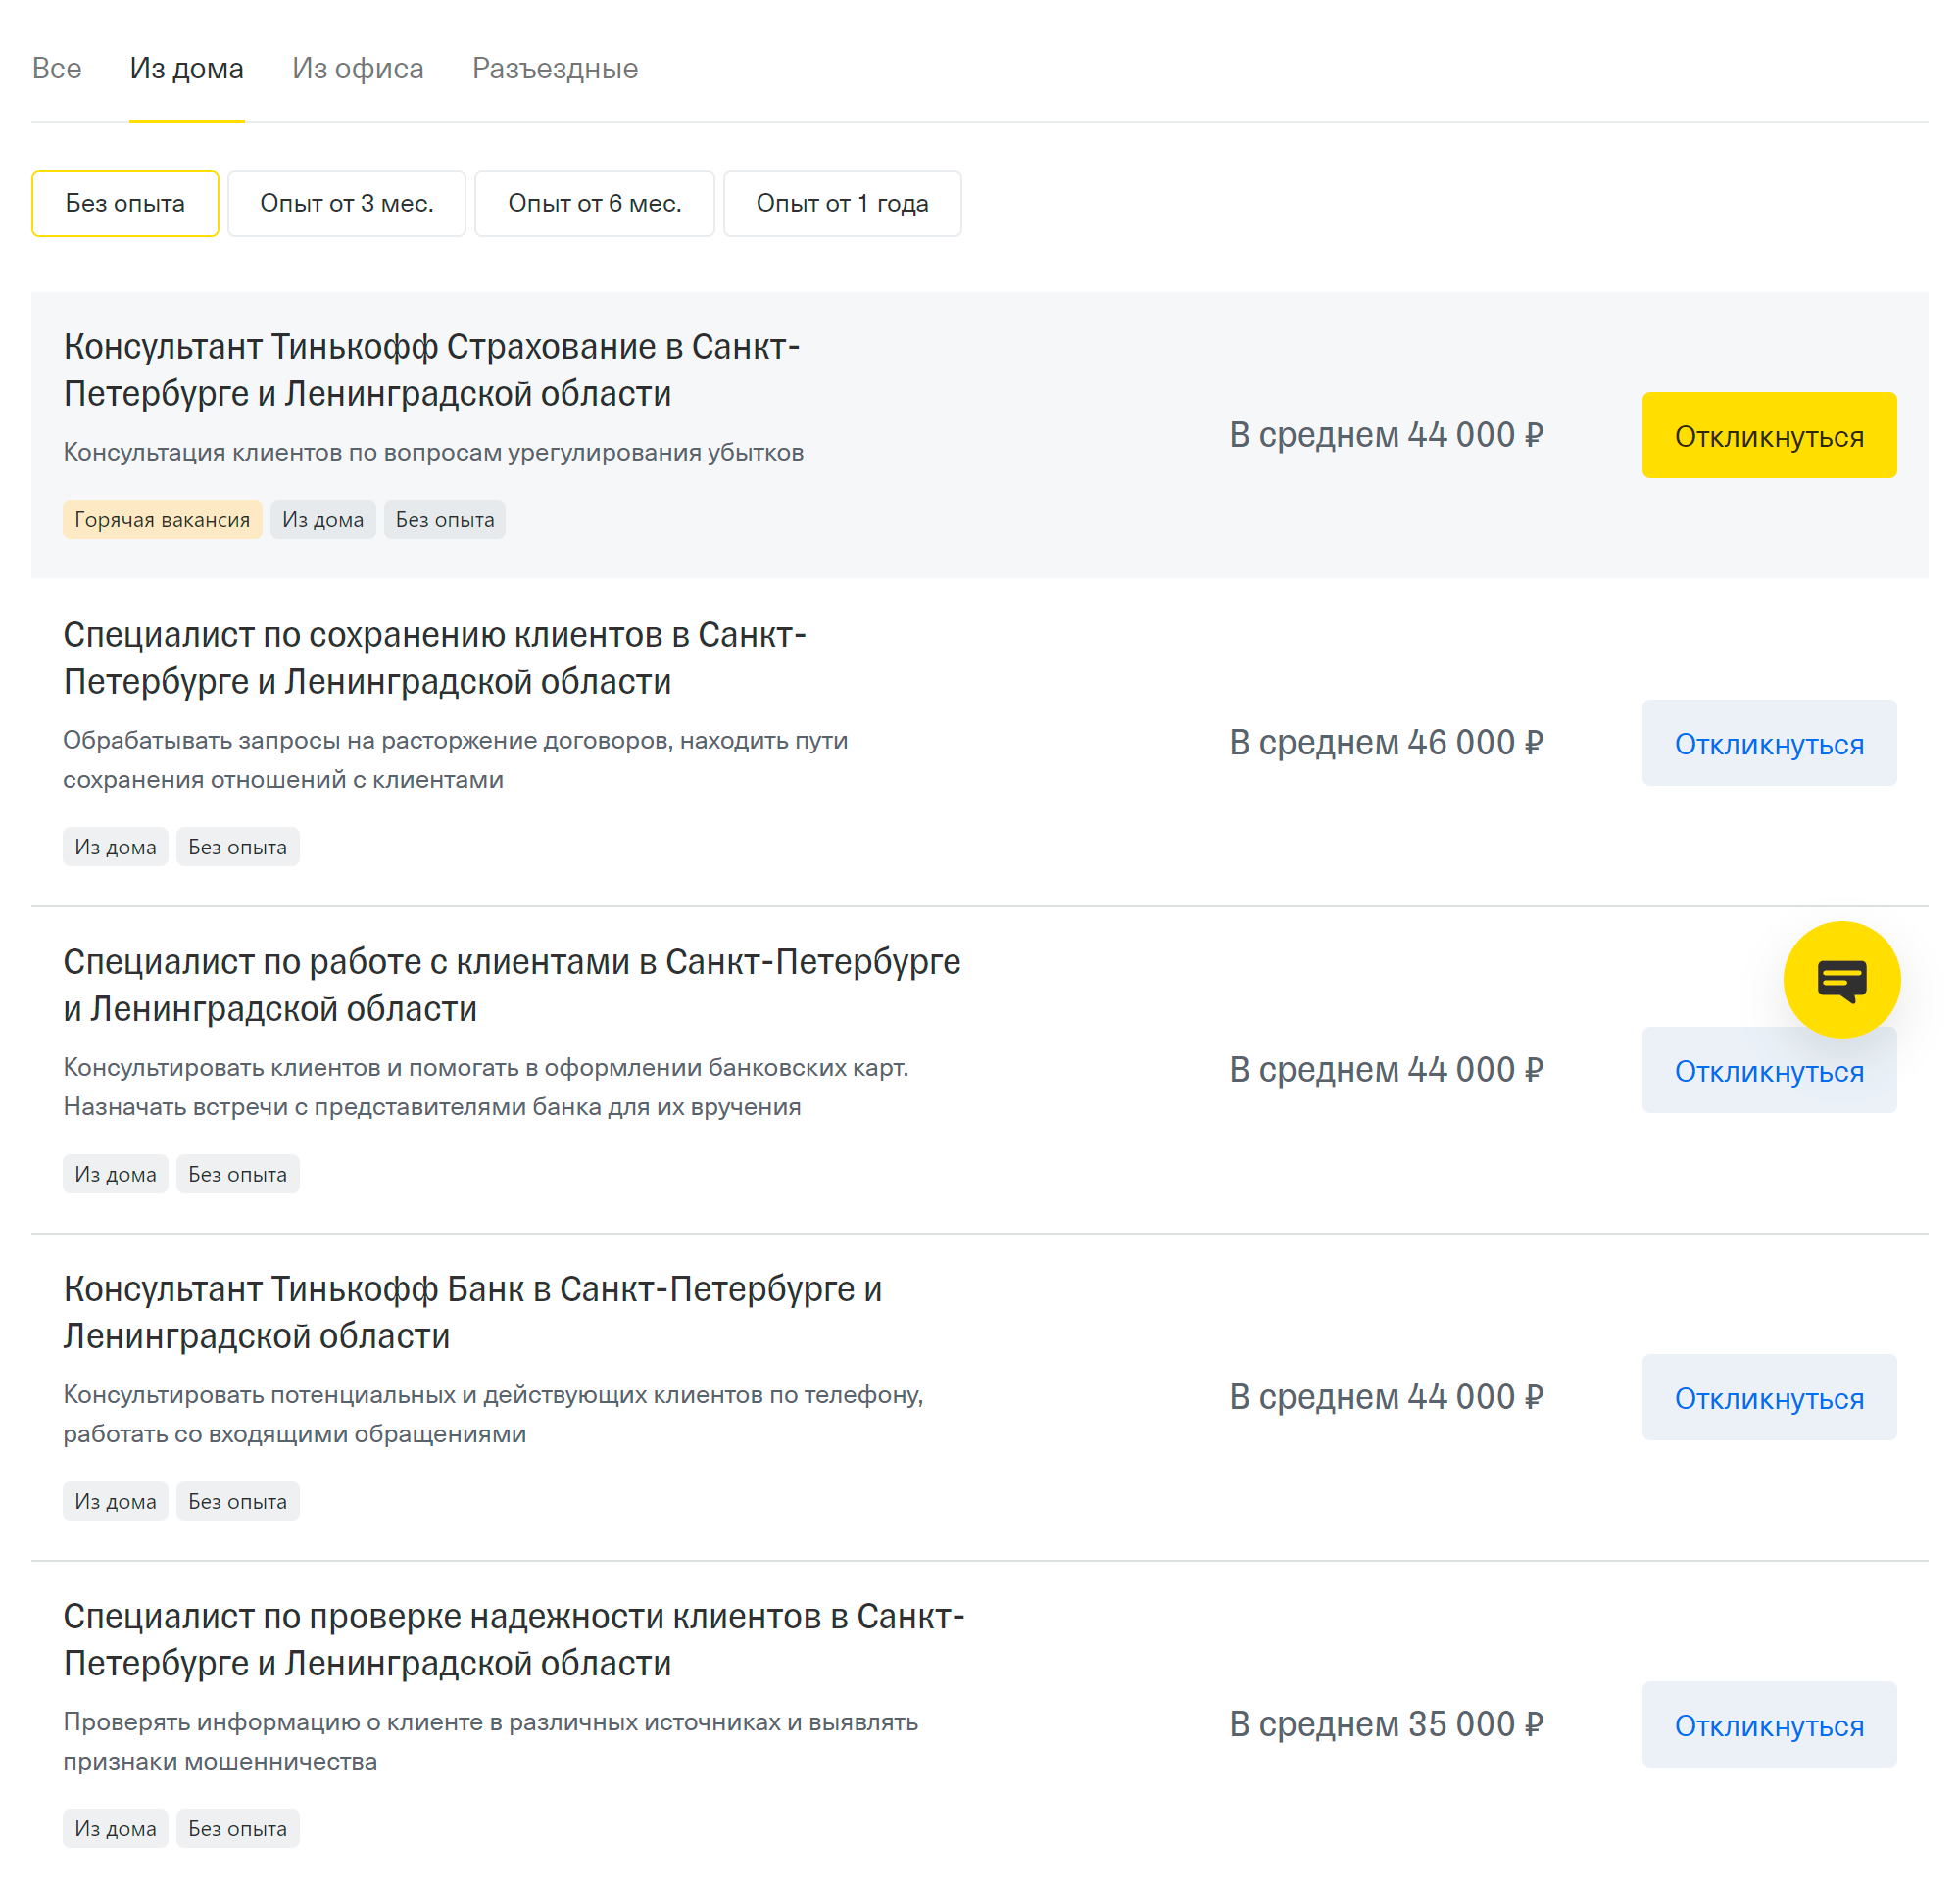 На сайте rabota.tinkoff.ru можно найти удаленную вакансию по фильтрам «из дома» и «без опыта»: перед началом работы сотрудники пройдут короткое онлайн⁠-⁠обучение